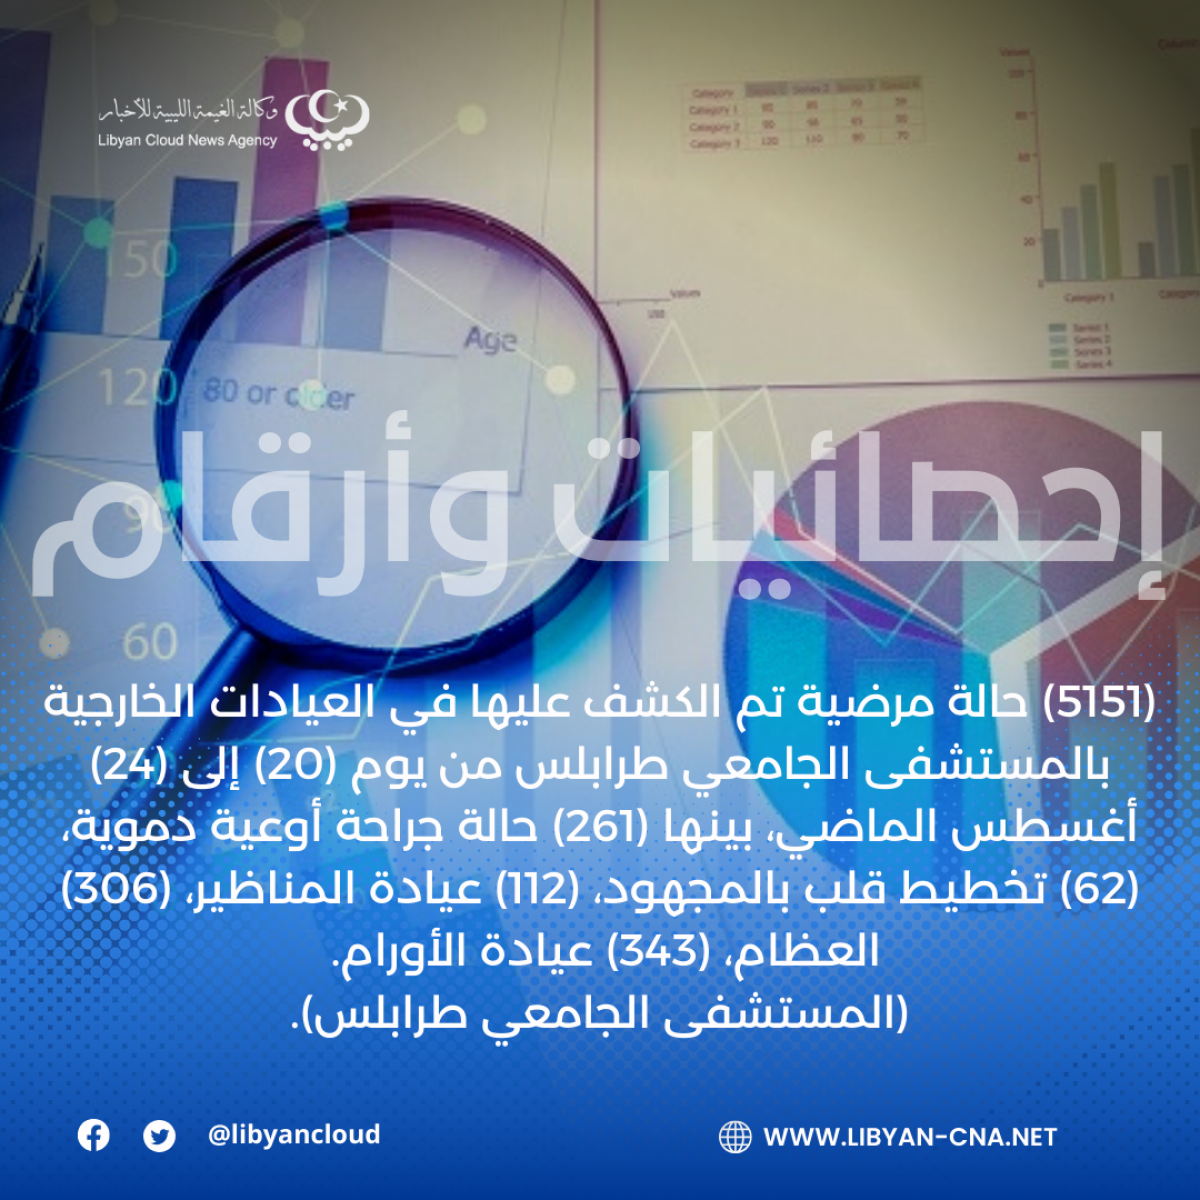 (5151) حالة مرضية تم الكشف عليها في العيادات الخارجية بالمستشفى الجامعي طرابلس خلال (4) أيام